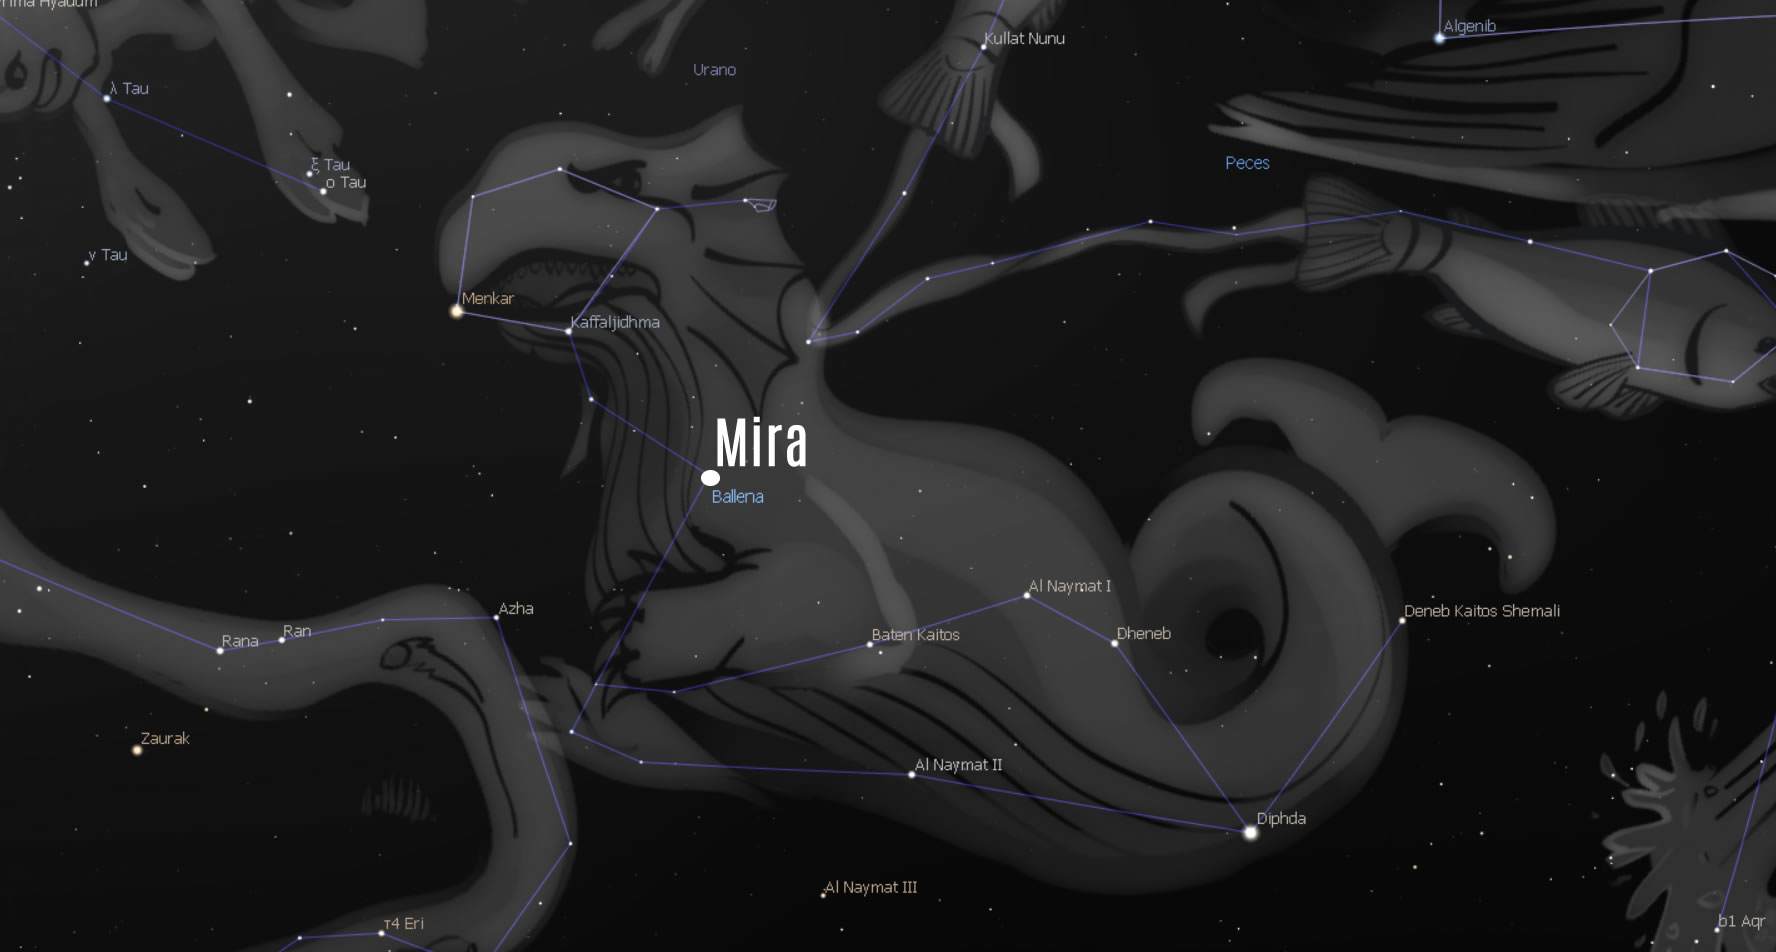 Mira se encuentra en el corazón de la Ballena en la leyenda estelar del Cetáceo